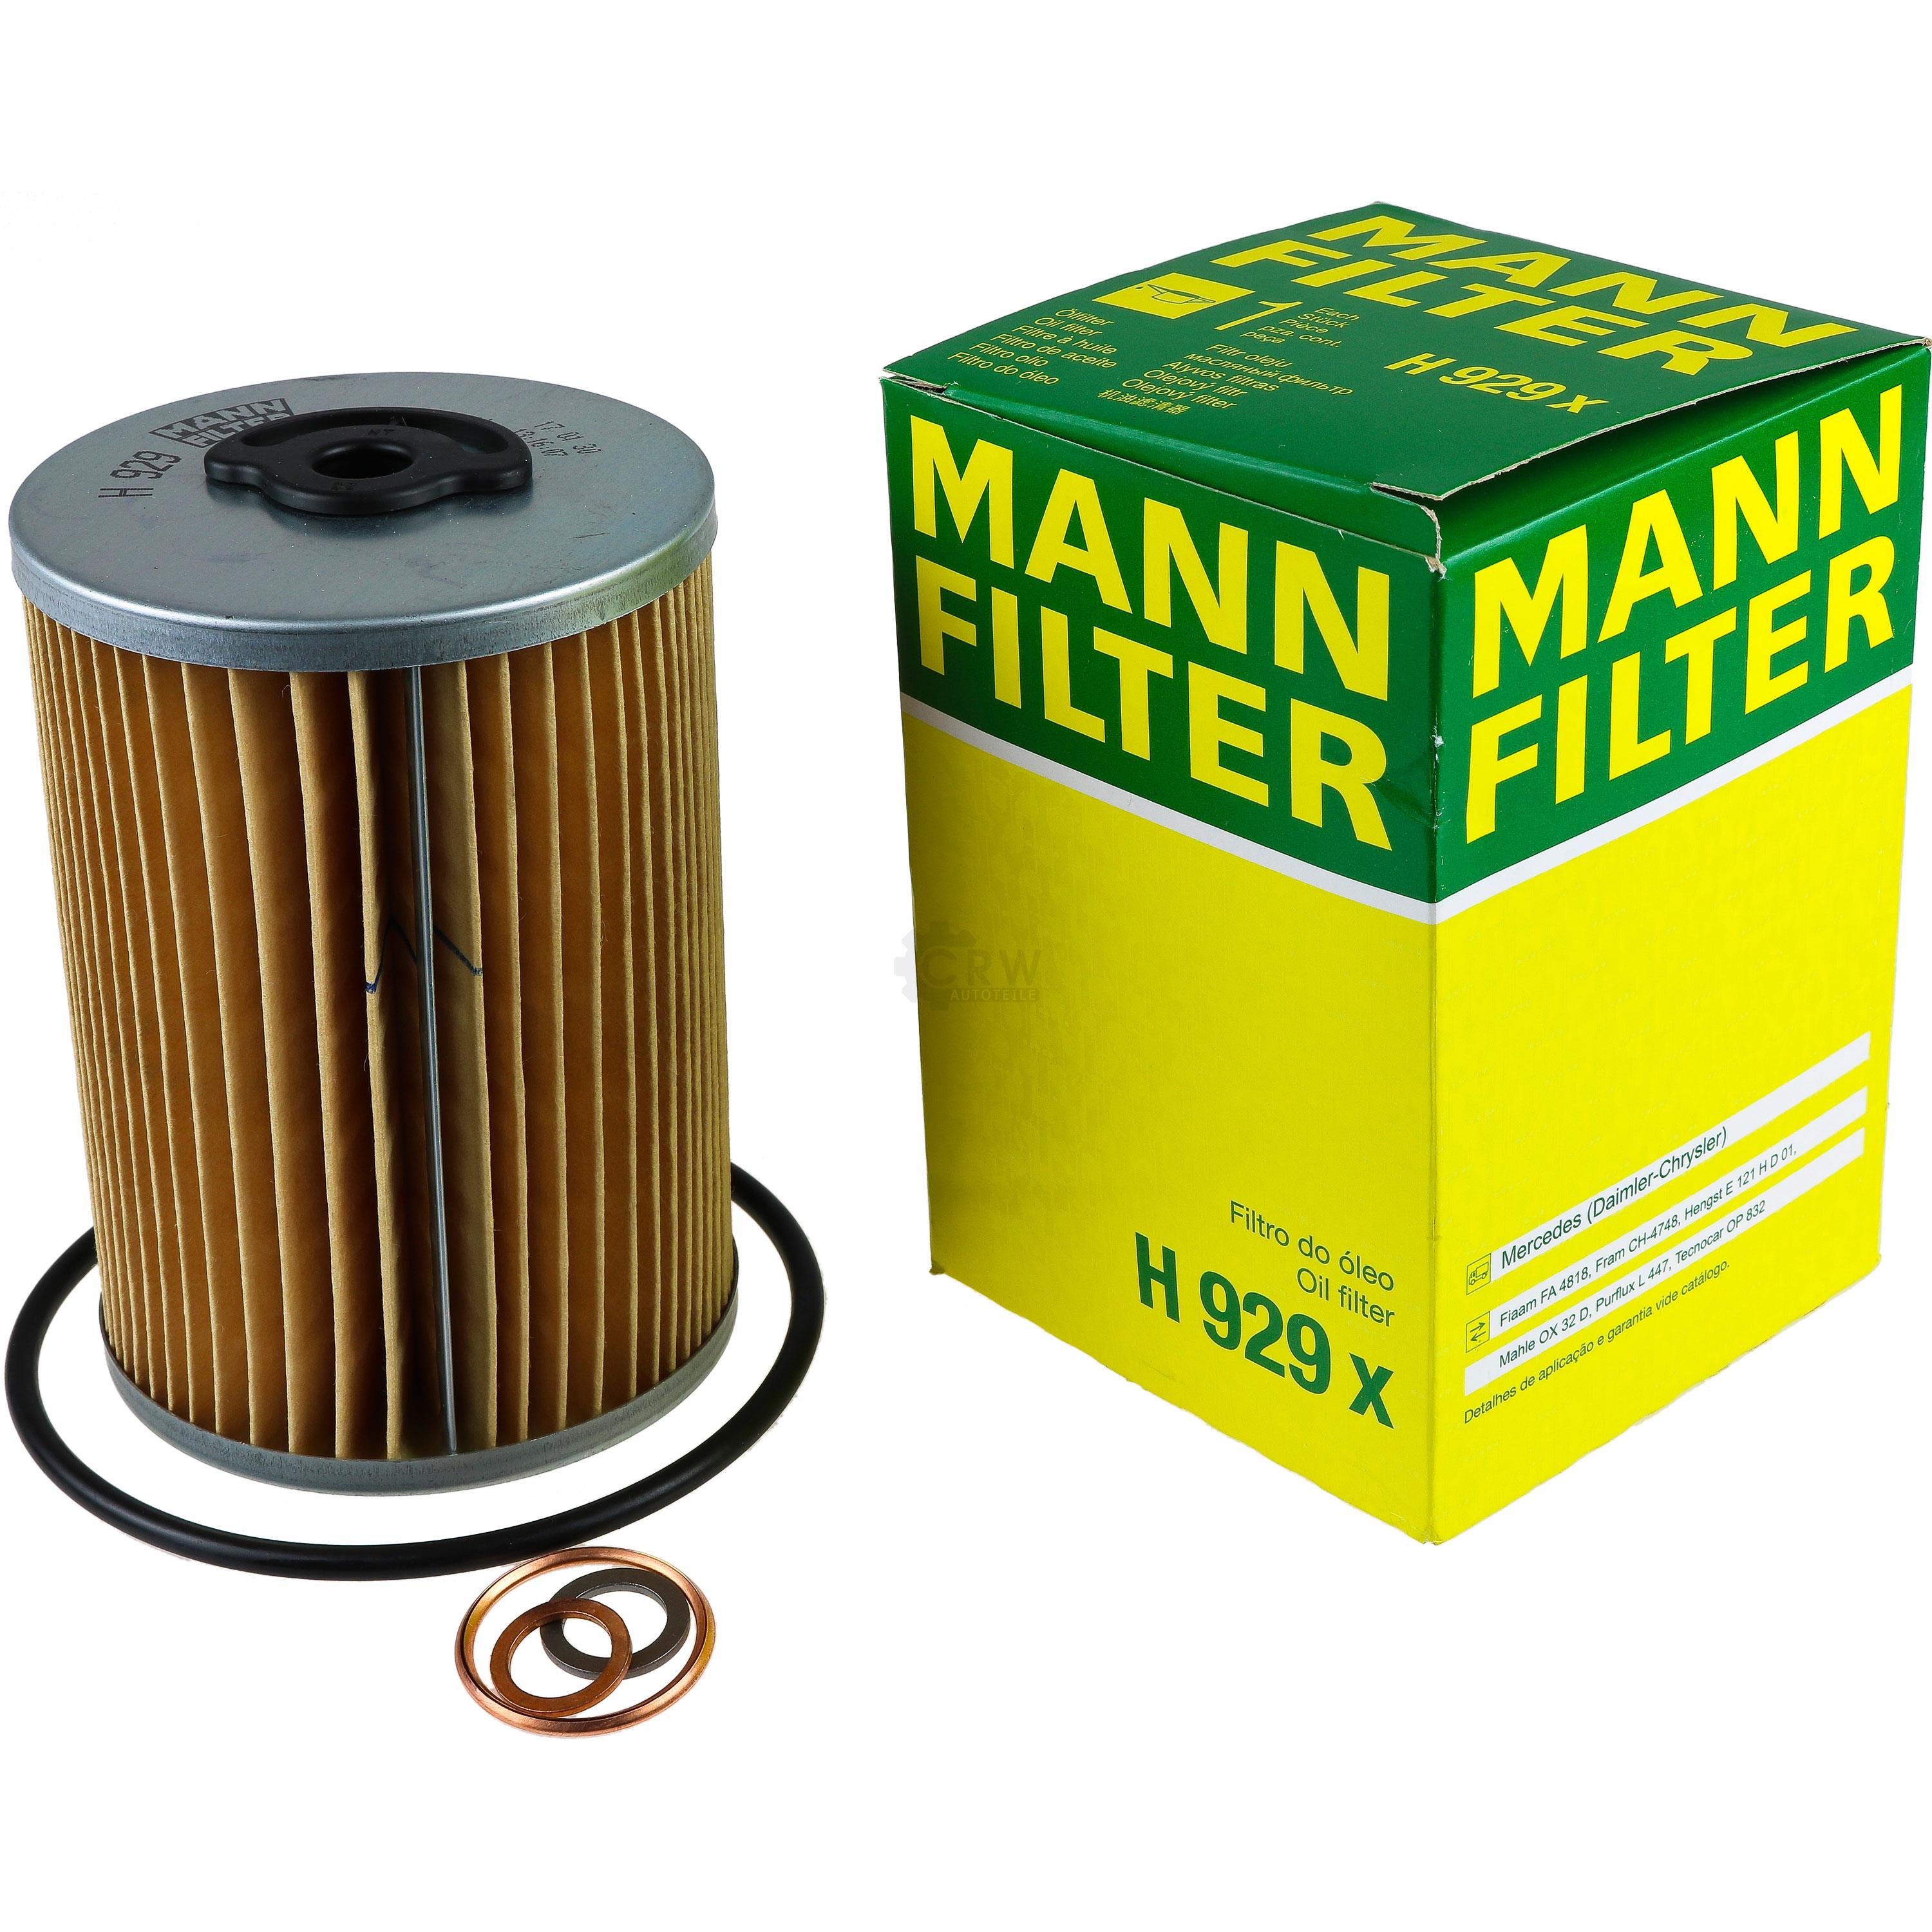 MANN-FILTER Ölfilter Oelfilter H 929 x Oil Filter